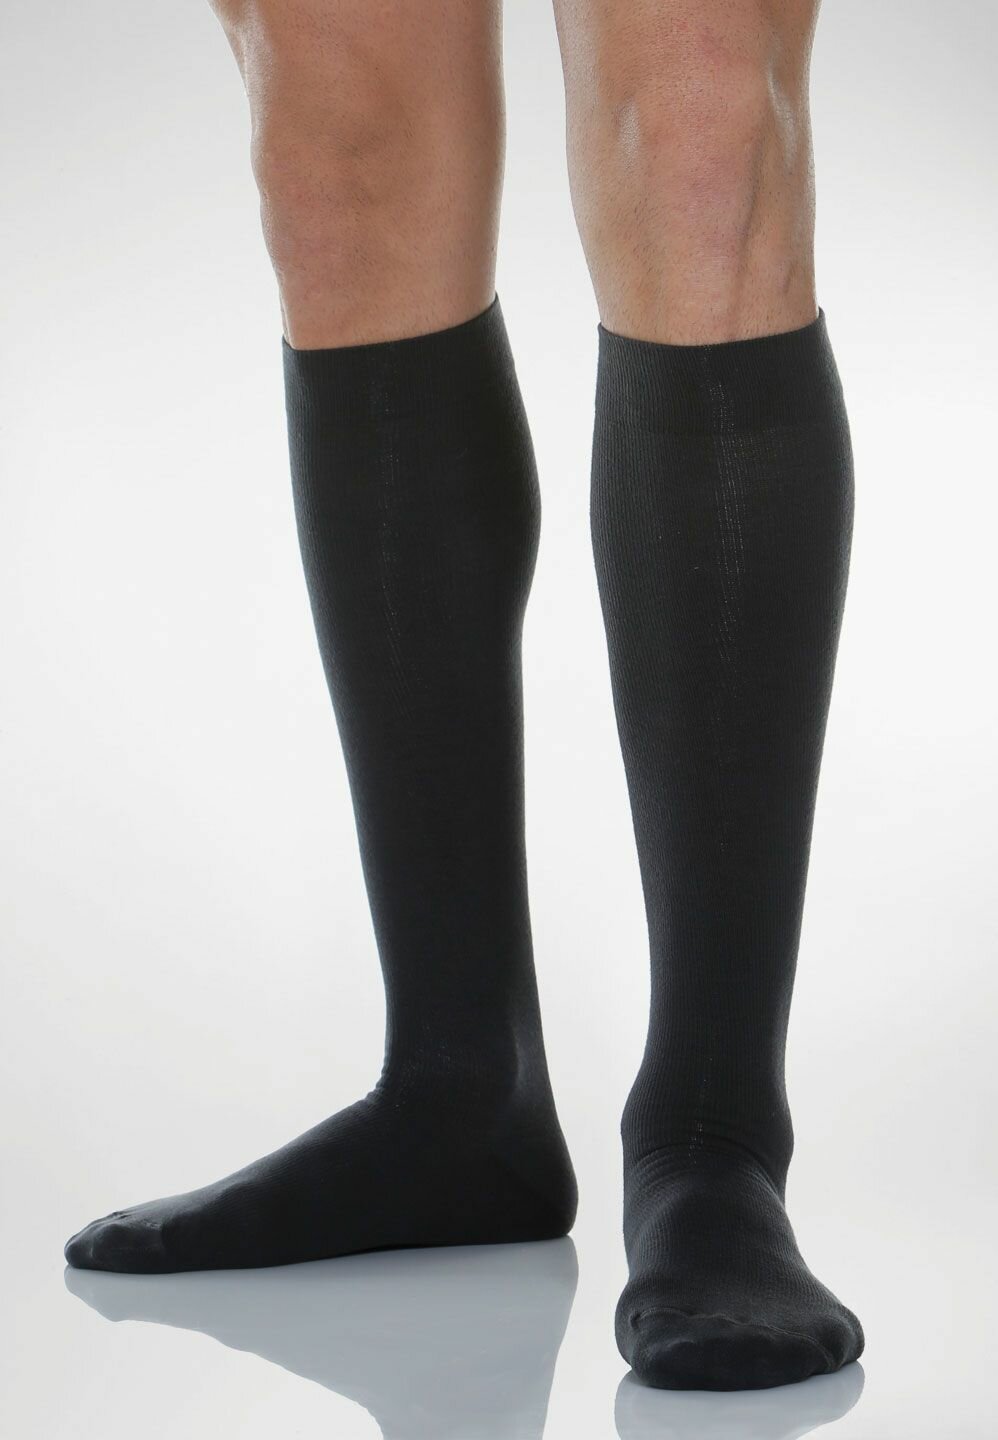 Гольфы Relaxsan Cotton Socks унисекс с хлопком, 1 класс компрессии, размер 5, черный